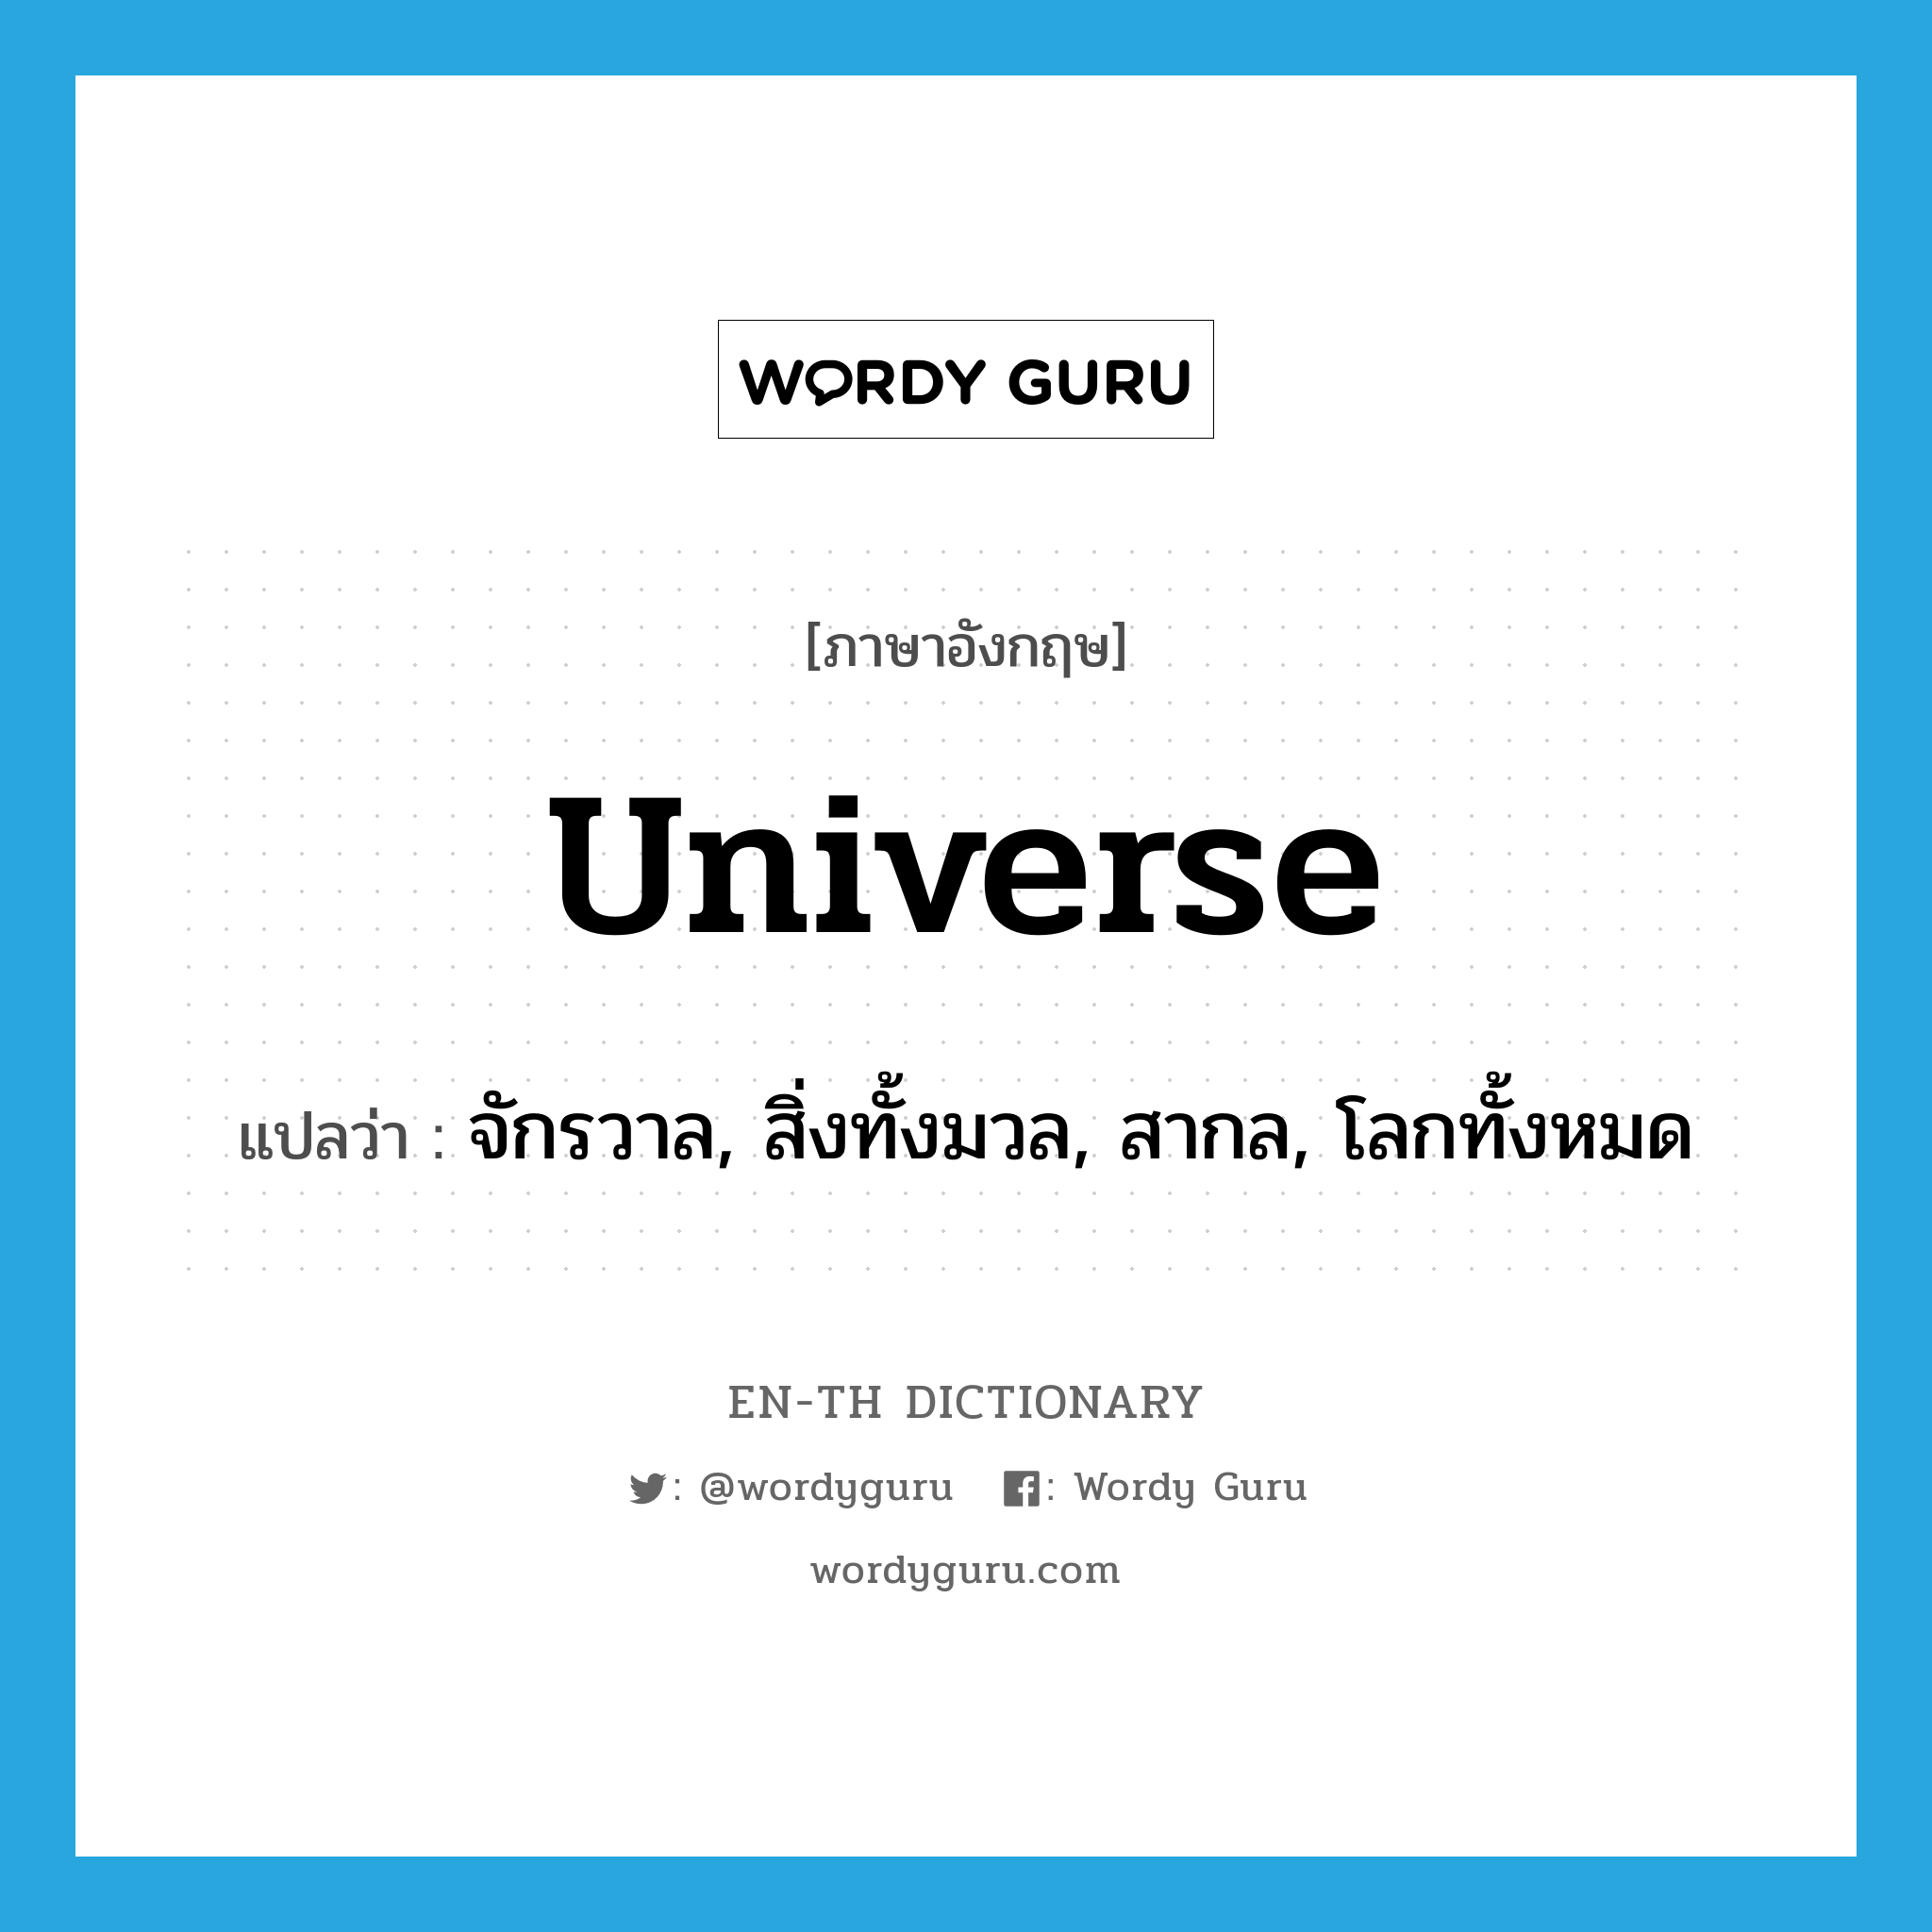 จักรวาล, สิ่งทั้งมวล, สากล, โลกทั้งหมด ภาษาอังกฤษ?, คำศัพท์ภาษาอังกฤษ จักรวาล, สิ่งทั้งมวล, สากล, โลกทั้งหมด แปลว่า universe ประเภท N หมวด N